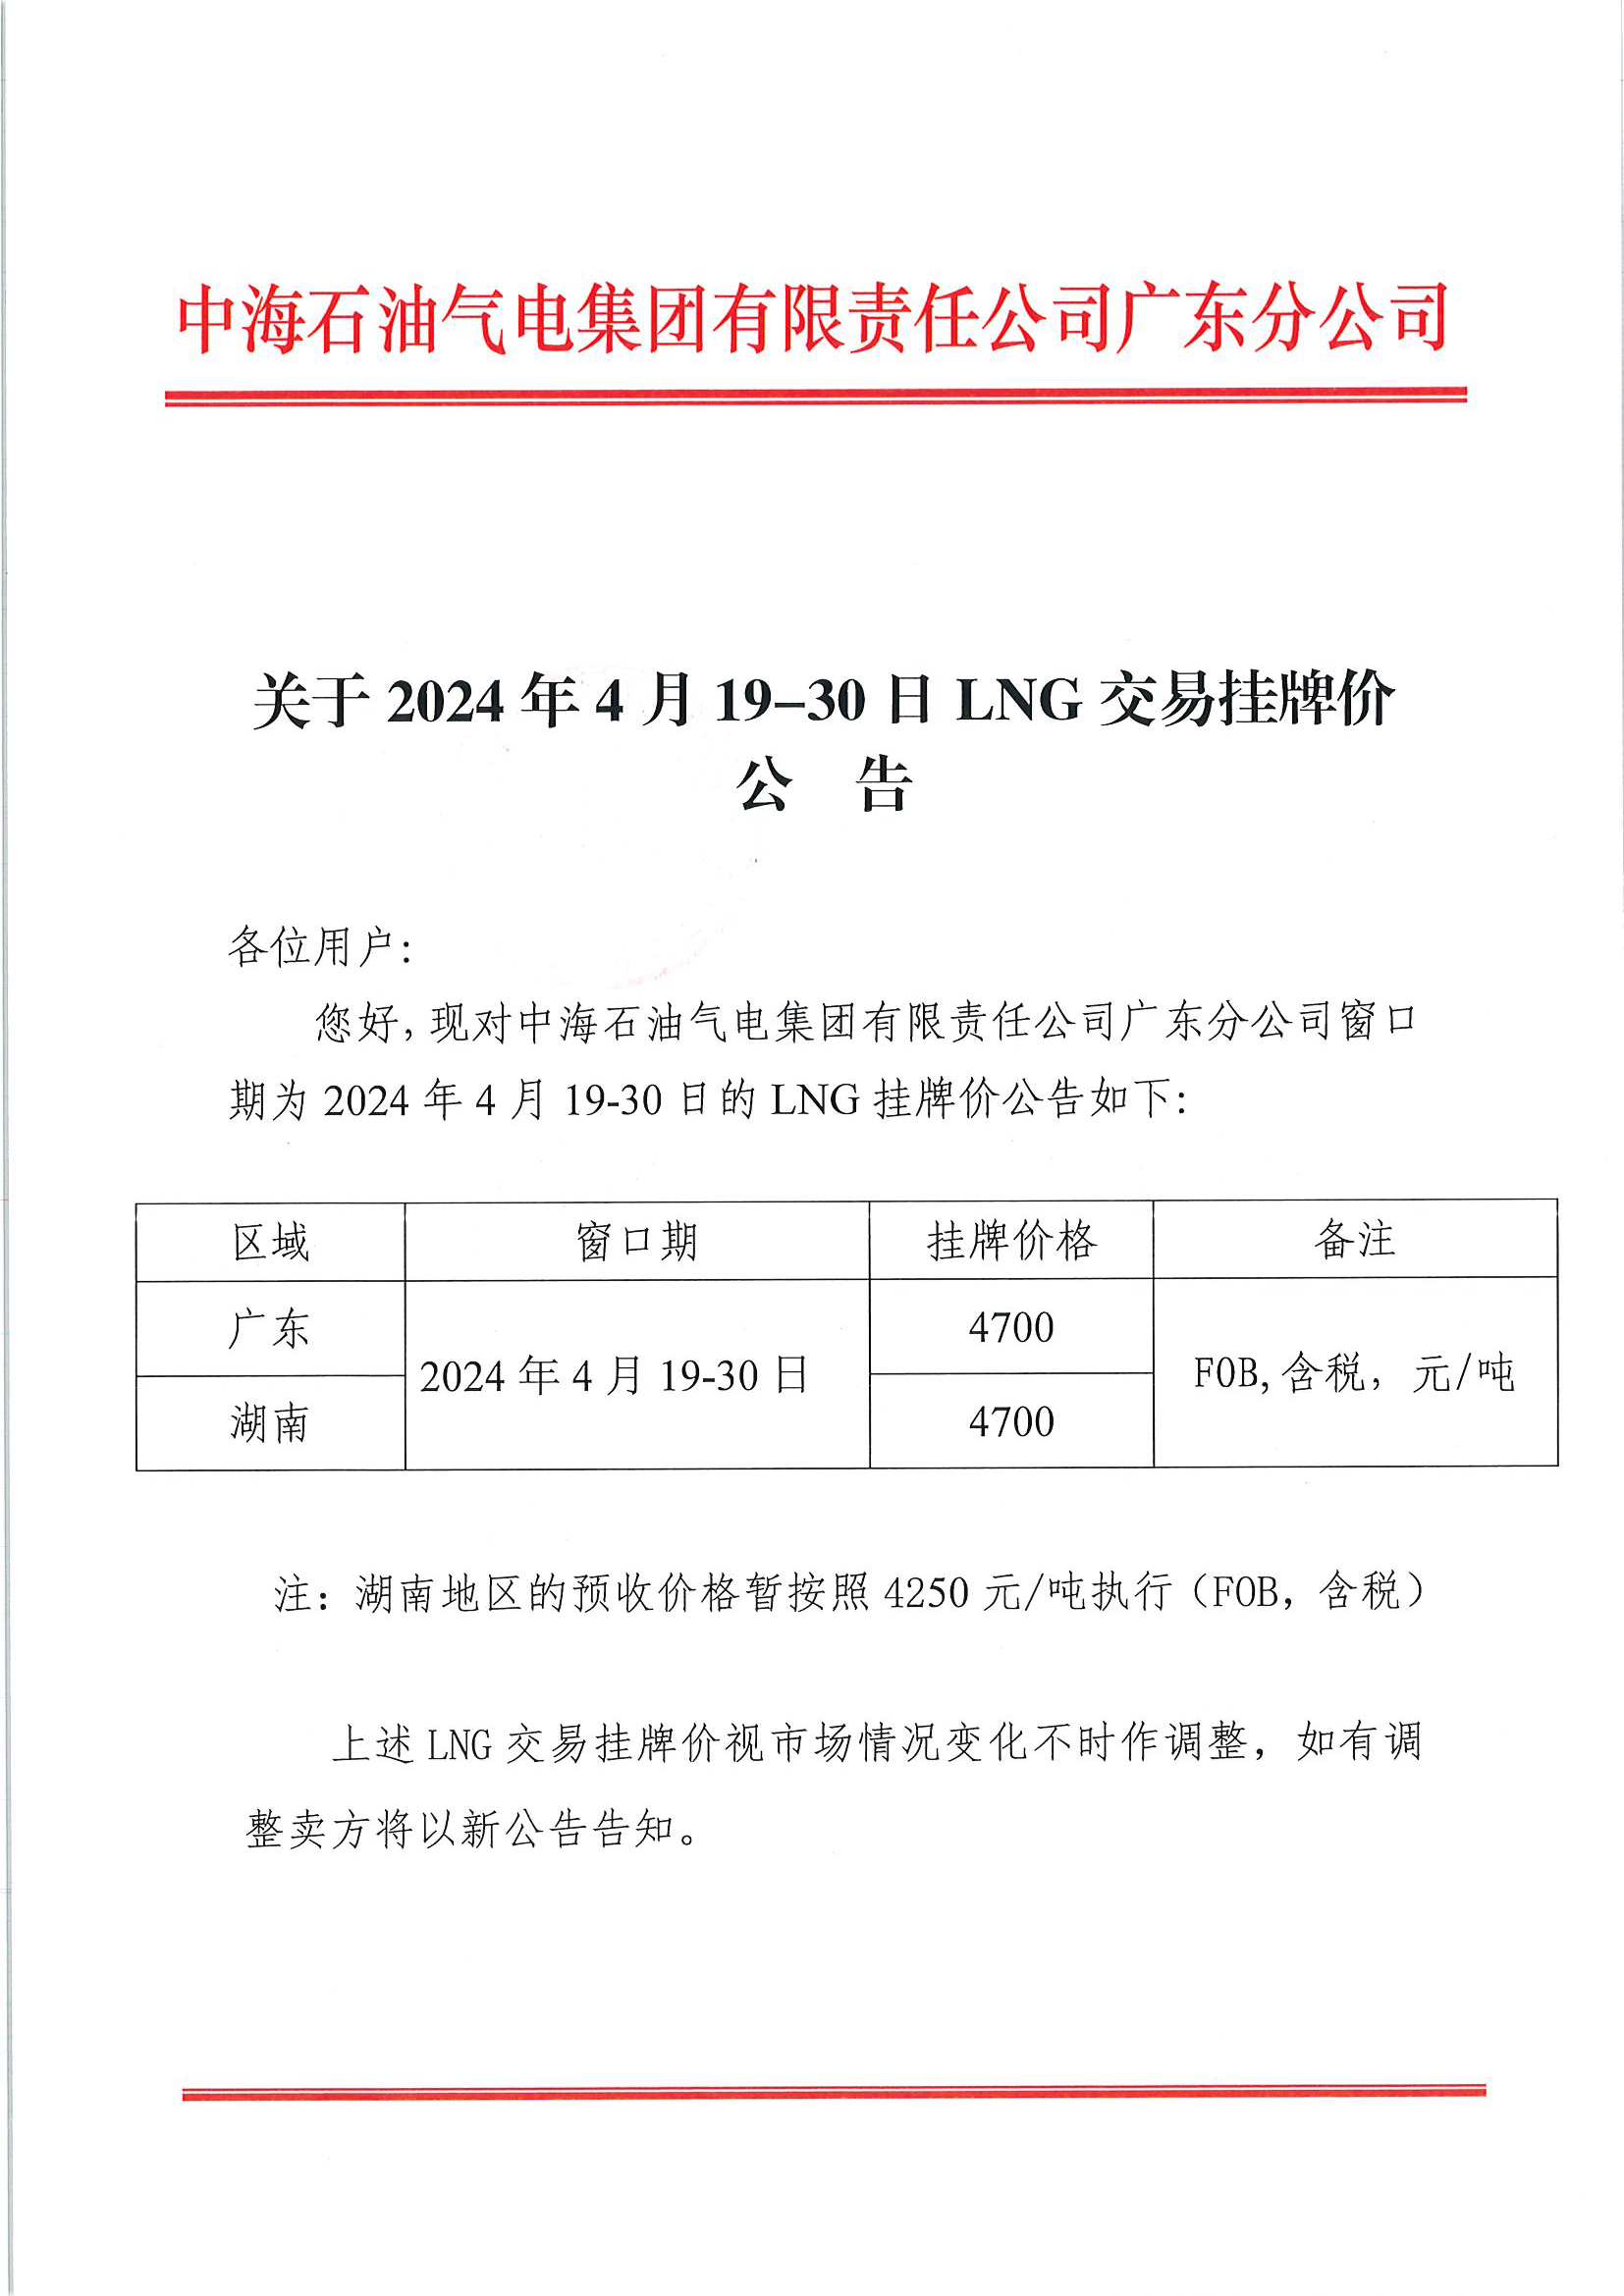 中海石油气电集团有限责任公司广东分公司关于2024年4月19-30日LNG交易挂牌价公告（广东、湖南地区)_页面_1.png